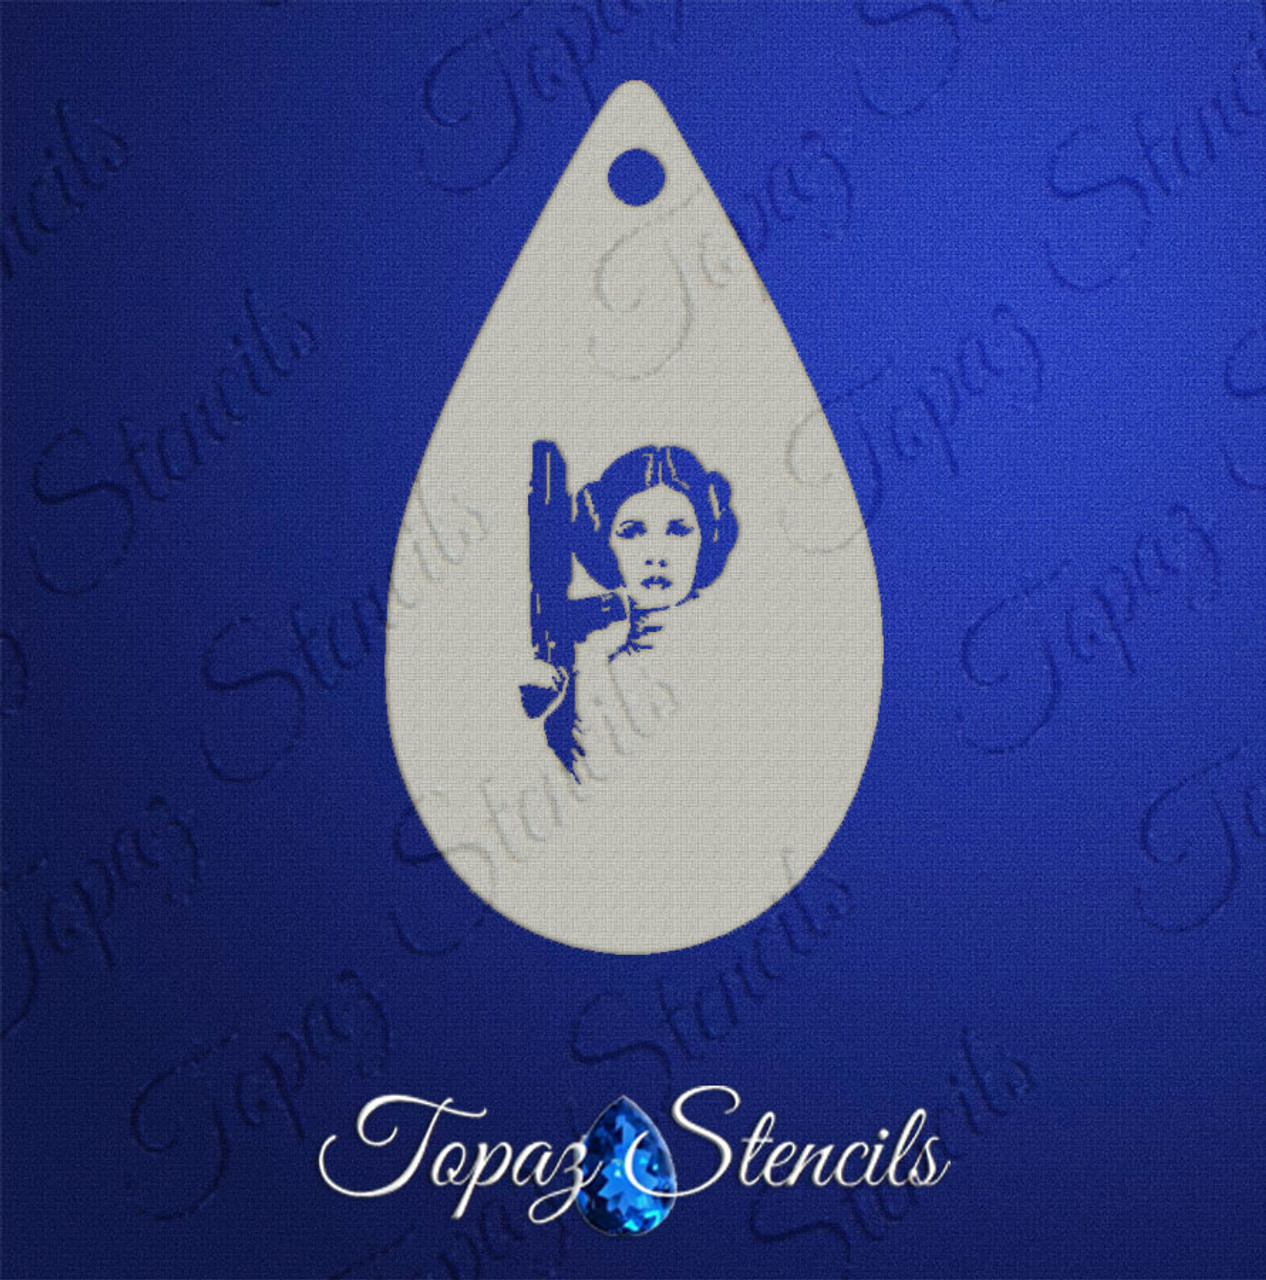 Princess Leia - Topaz Stencils